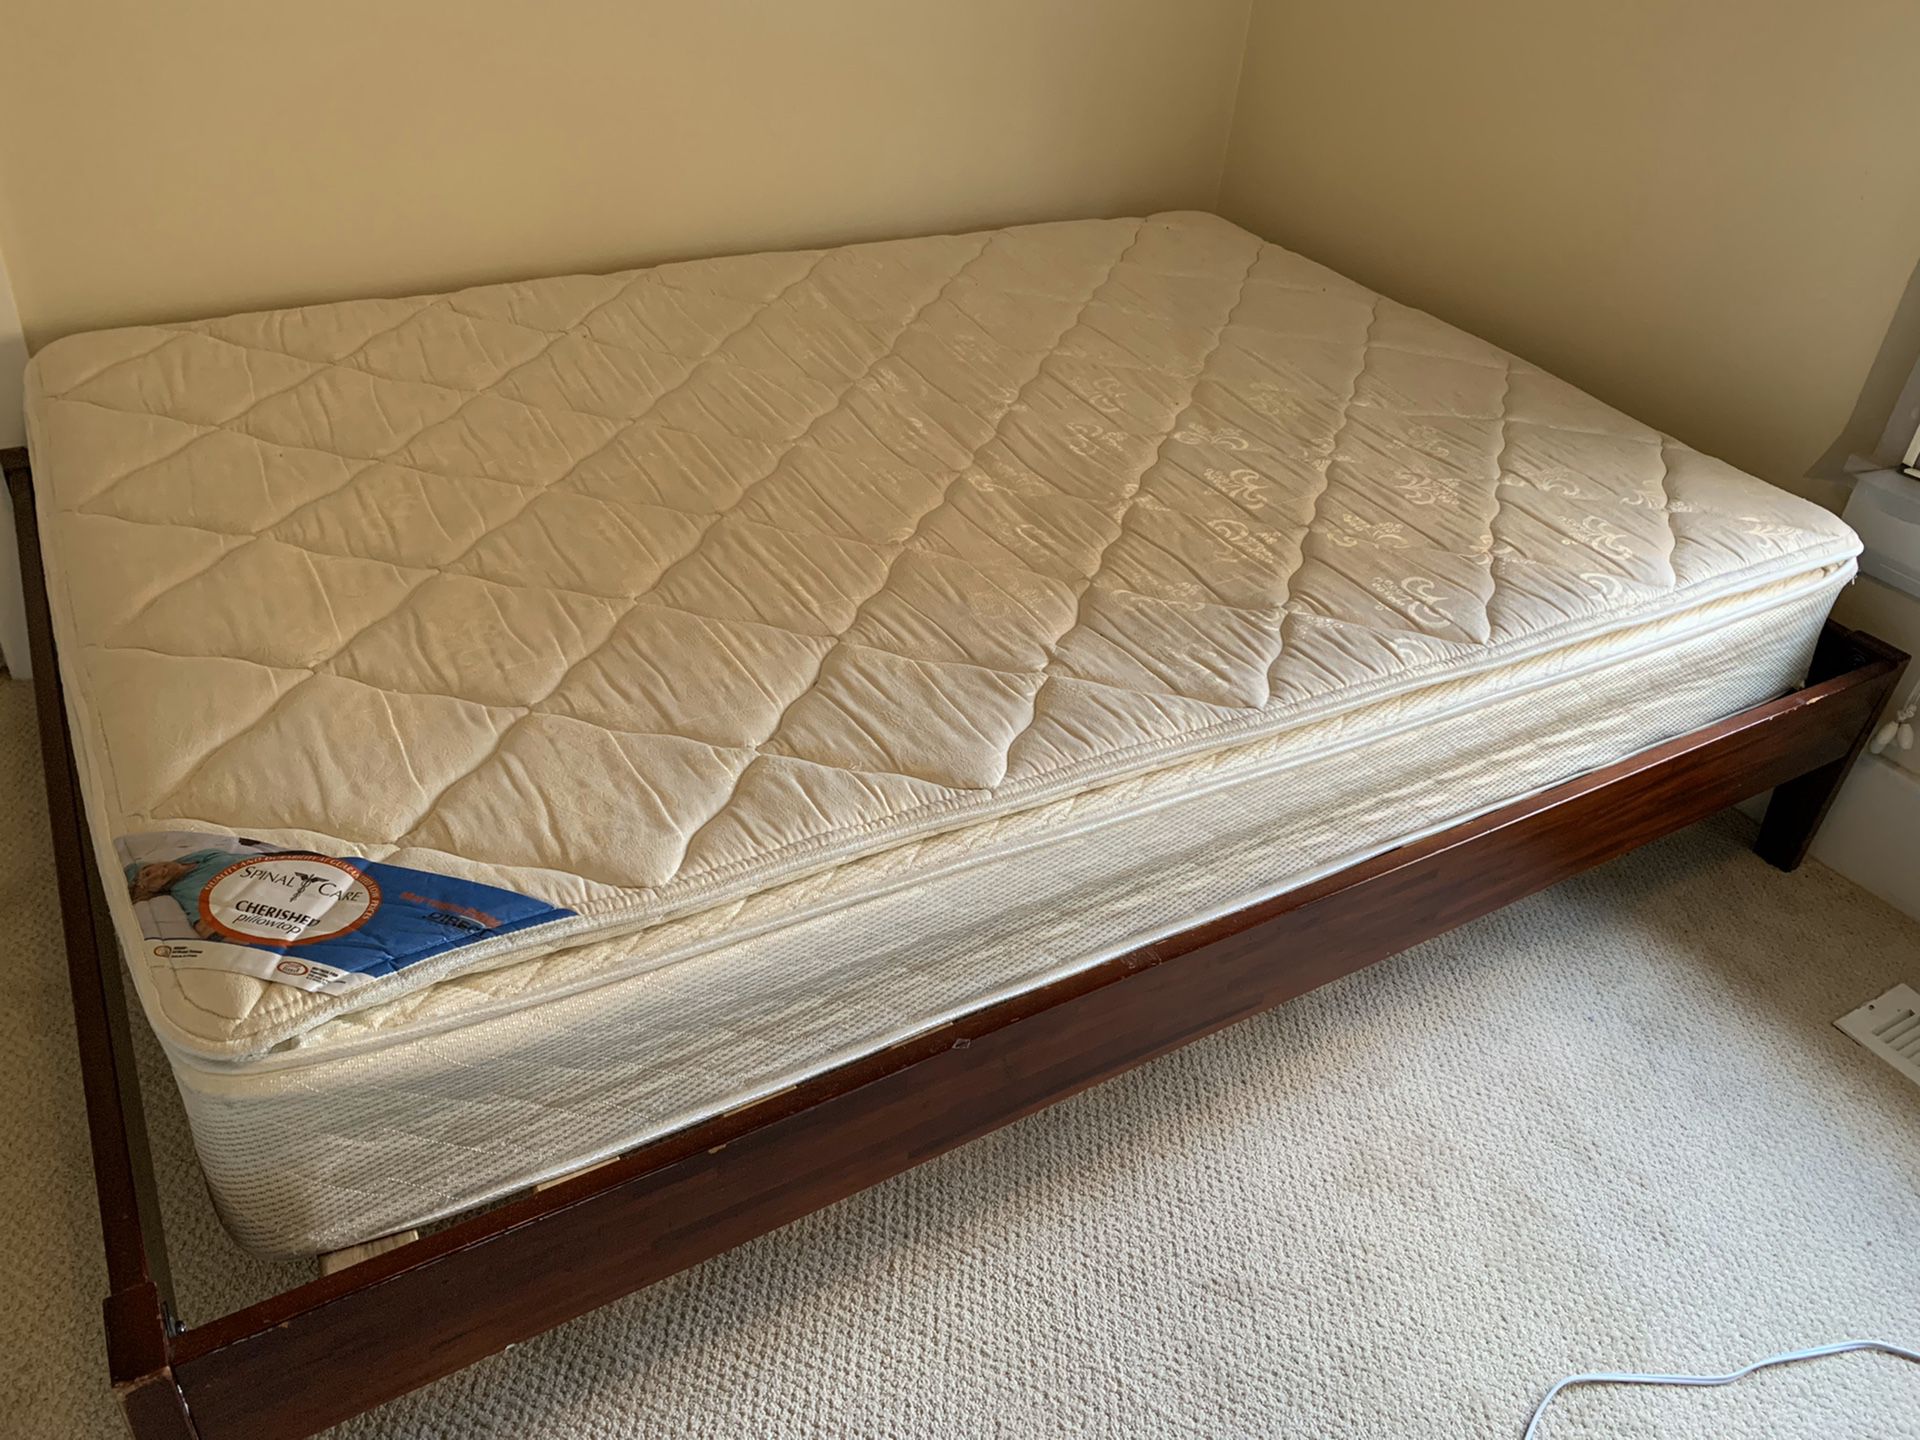 Free full-size mattress